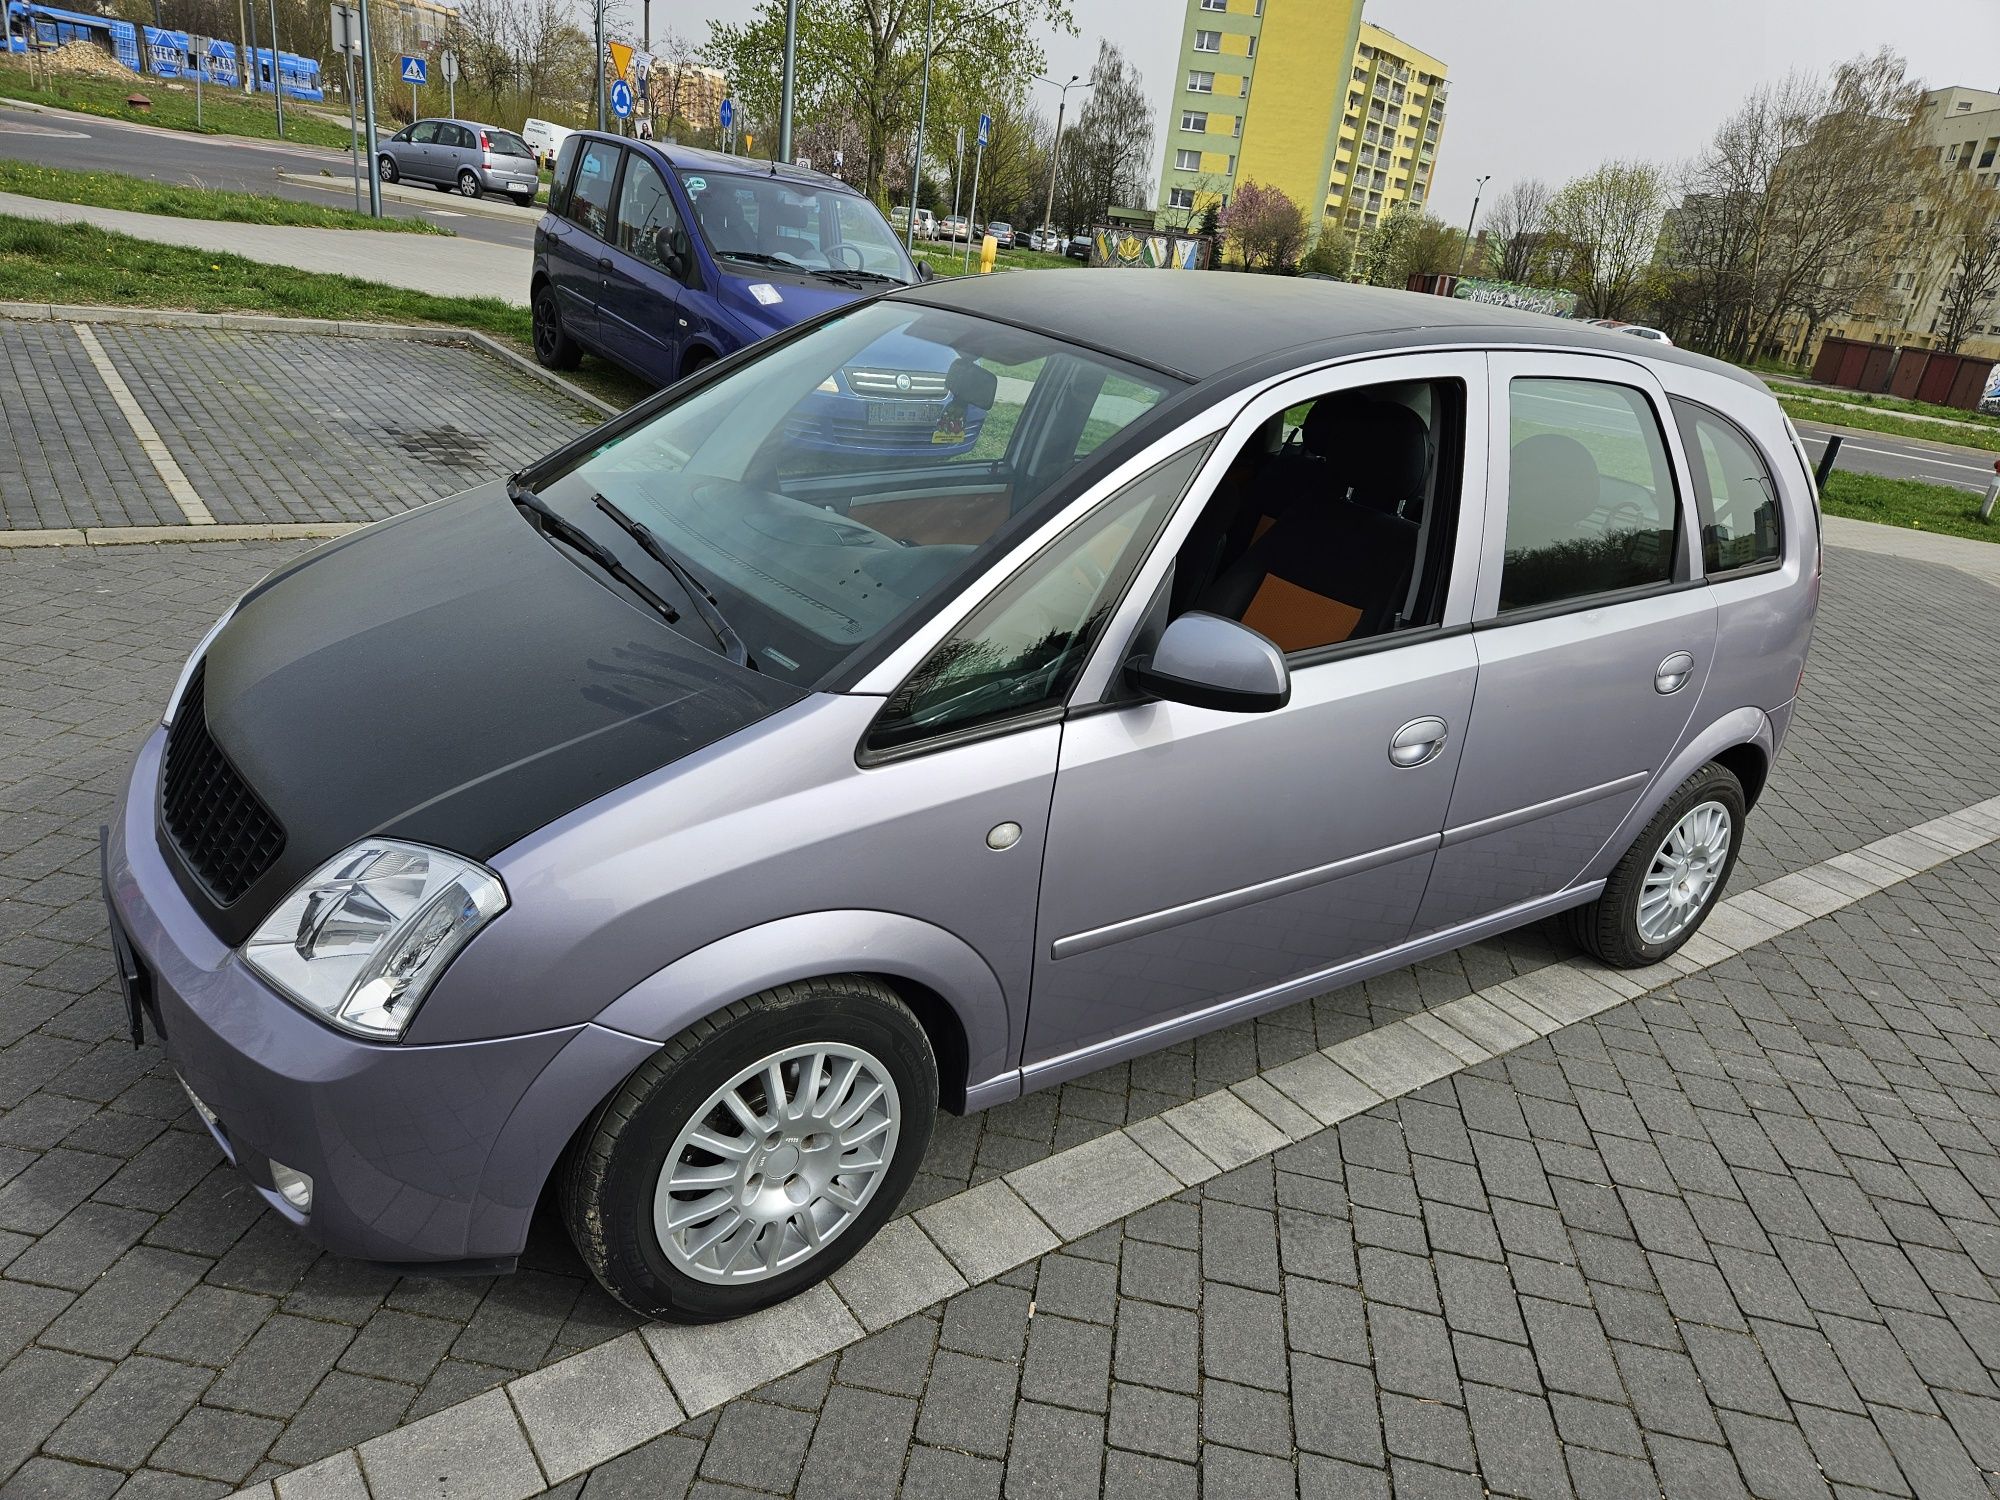 Opel Meriva skrzynia Automatyczna  1,6 16v klima , alu , serwis ASO ,